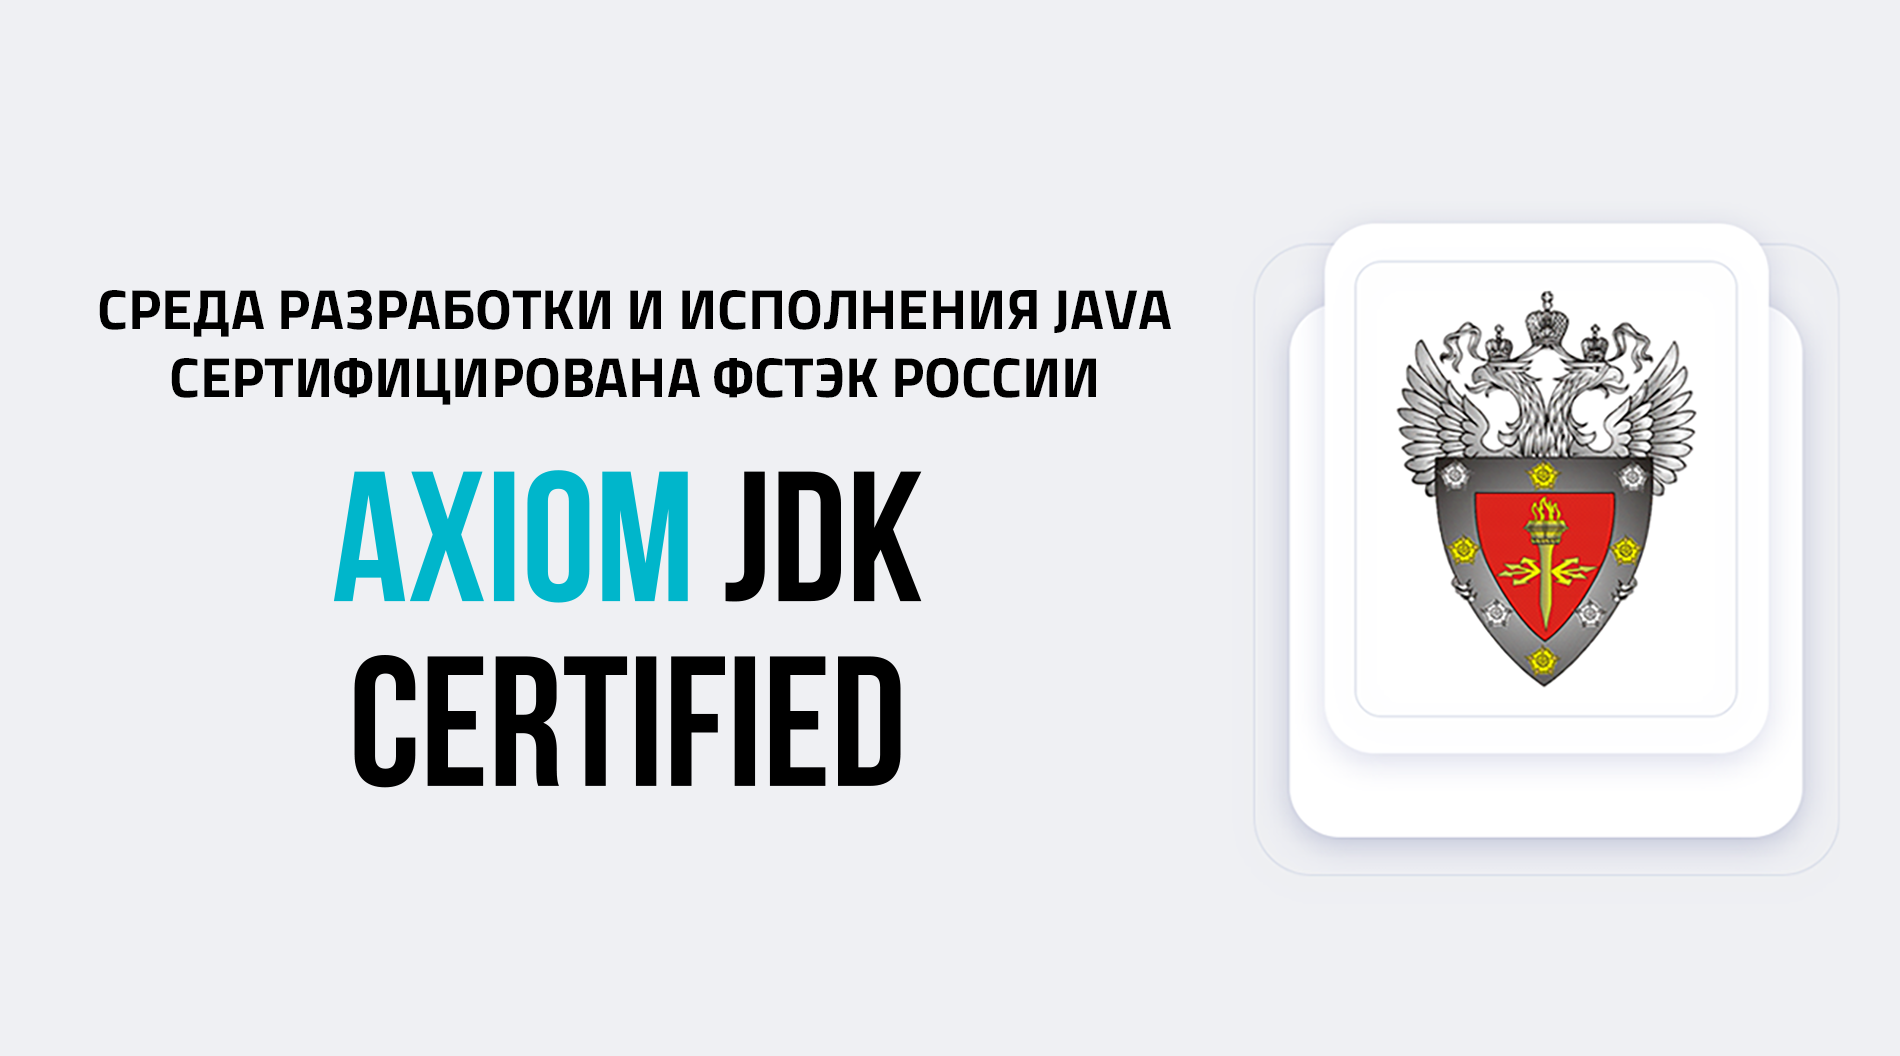 БЕЛЛСОФТ получил сертификат ФСТЭК на Axiom JDK Certified, среду разработки и исполнения Java